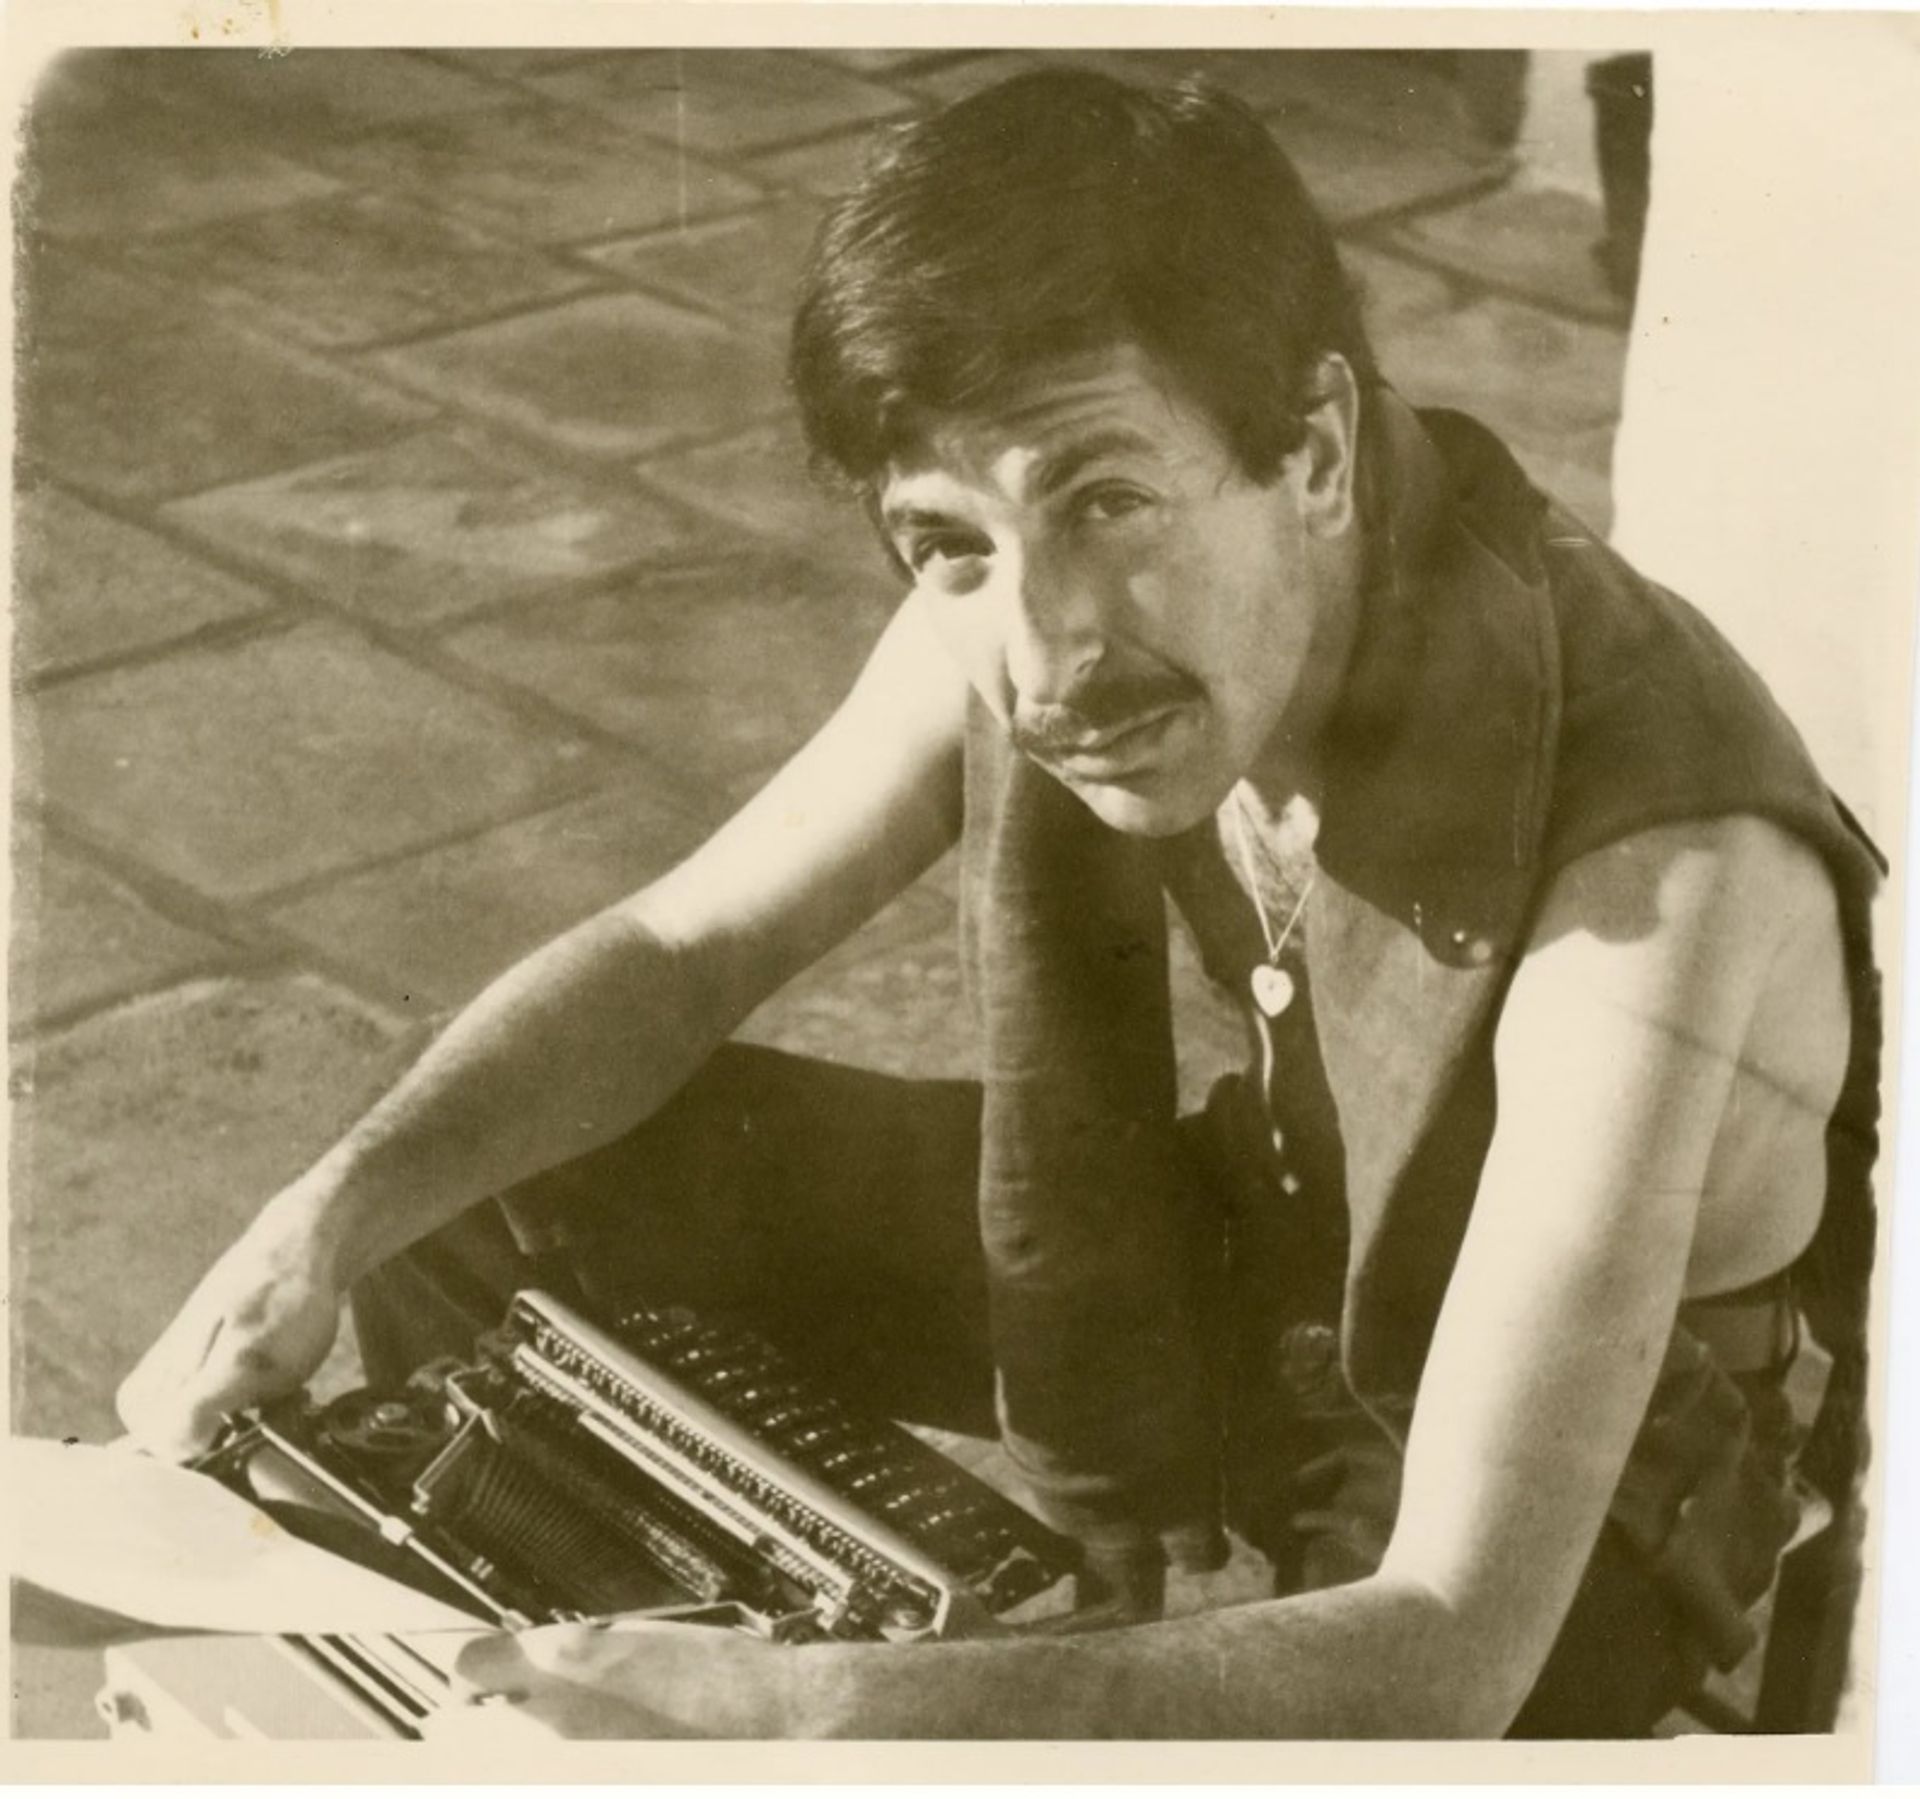 כהן על ההידרה [מכונת כתיבה], שנות ה-60. צלם לא ידוע

© לאונרד כהן עזבון משפחתי